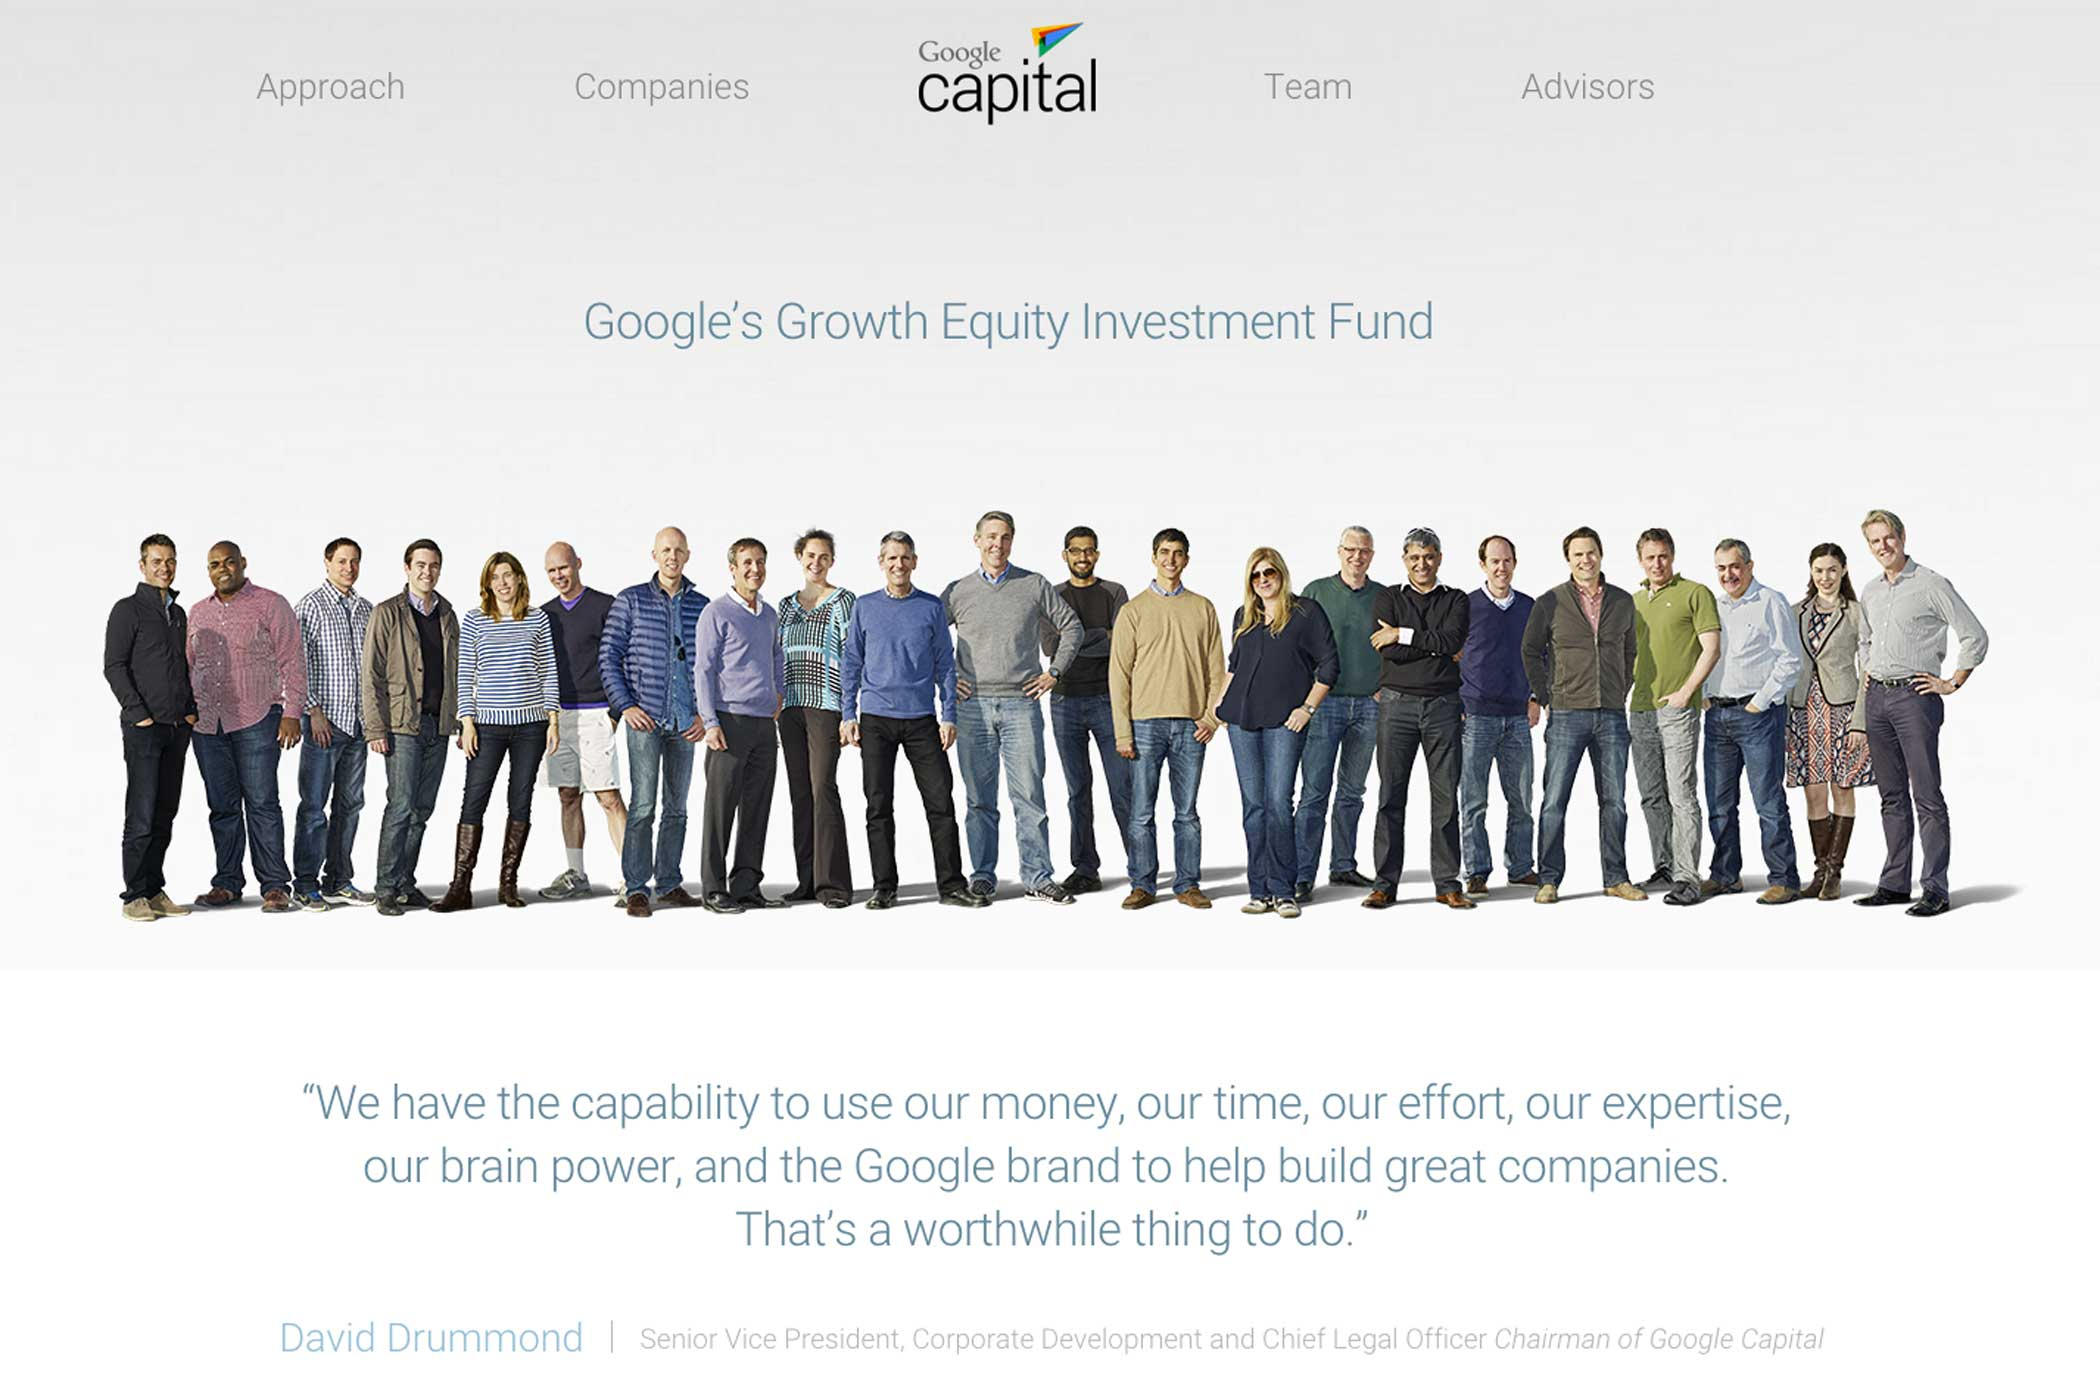 Google Ventures